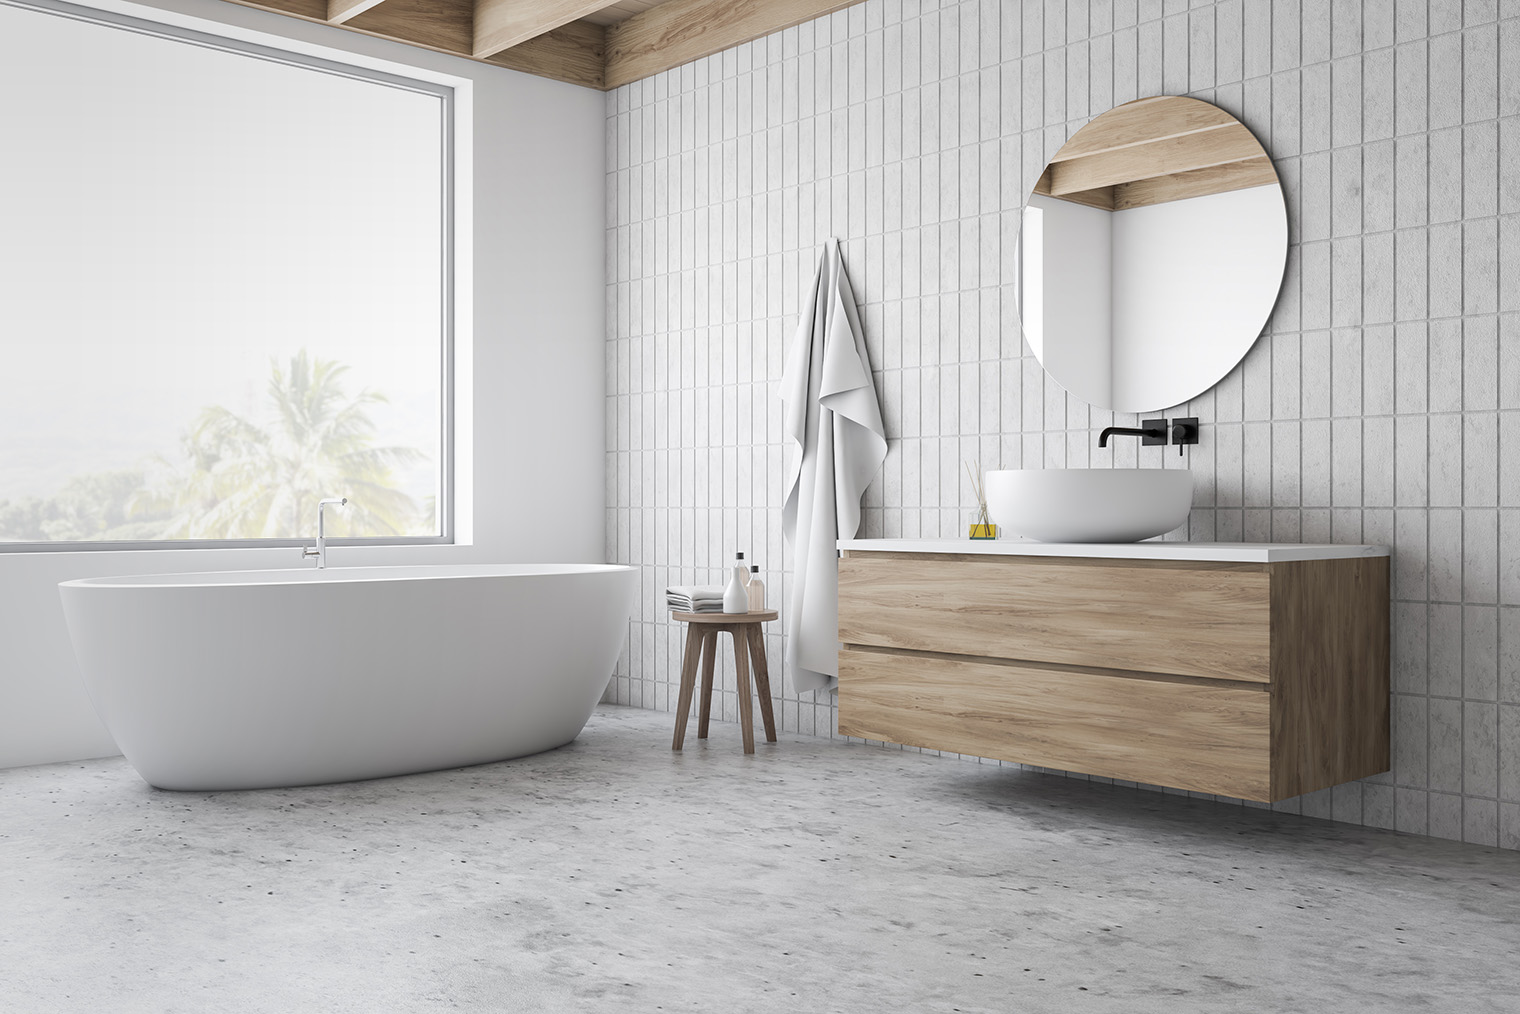 Узкая вертикальная плитка — самый модный вариант для ремонта ванной комнаты в 2024 году. Фотография: ImageFlow / Shutterstock / FOTODOM